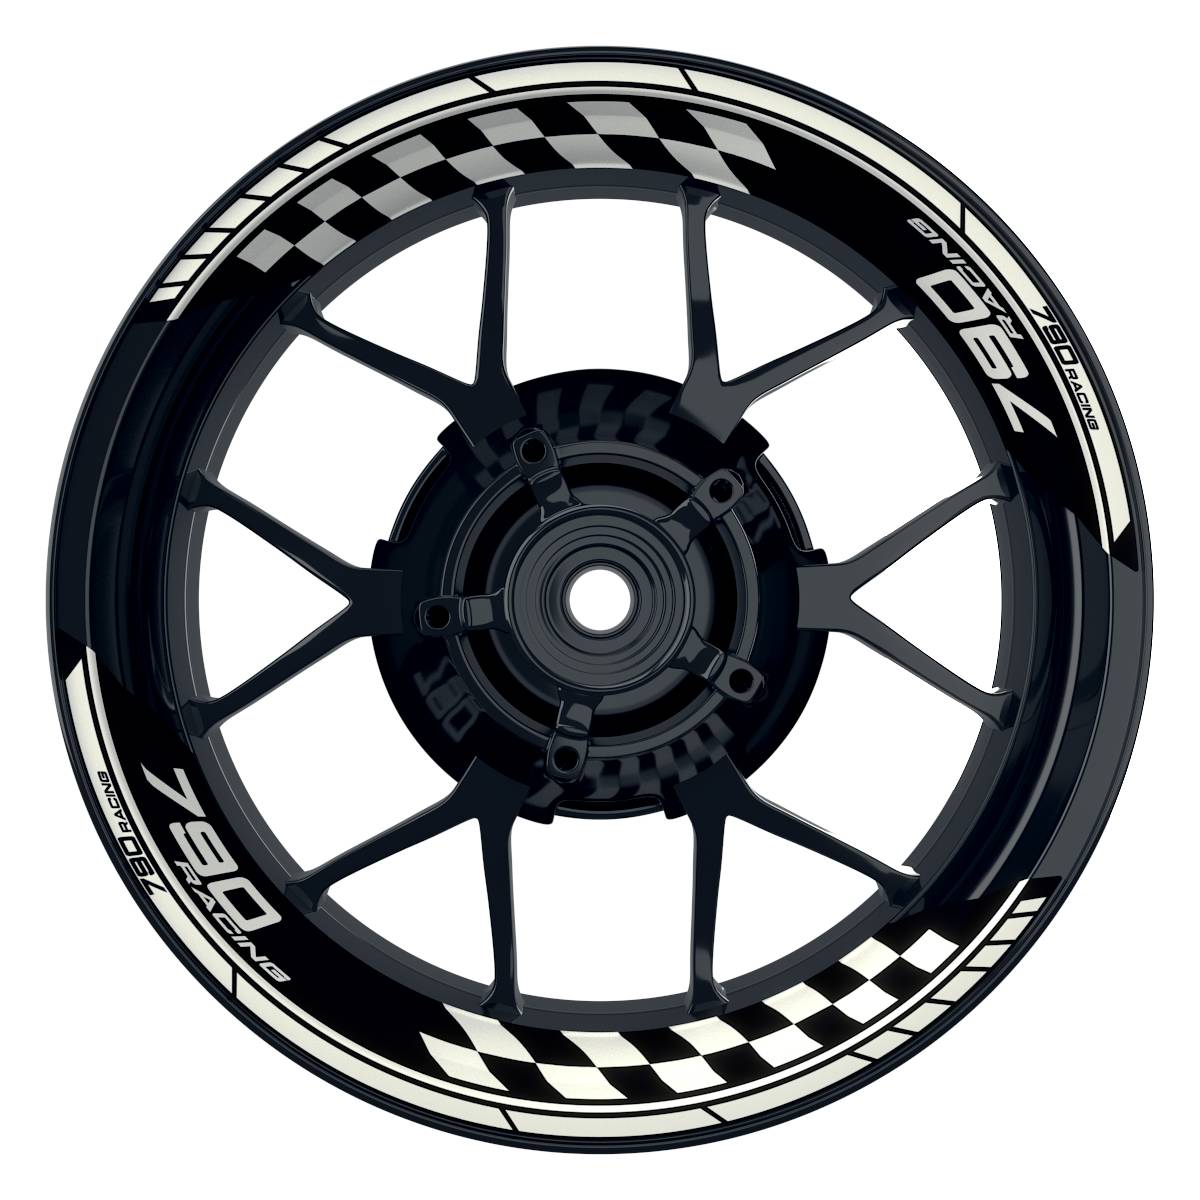 KTM Racing 790 Grid schwarz weiss Frontansicht